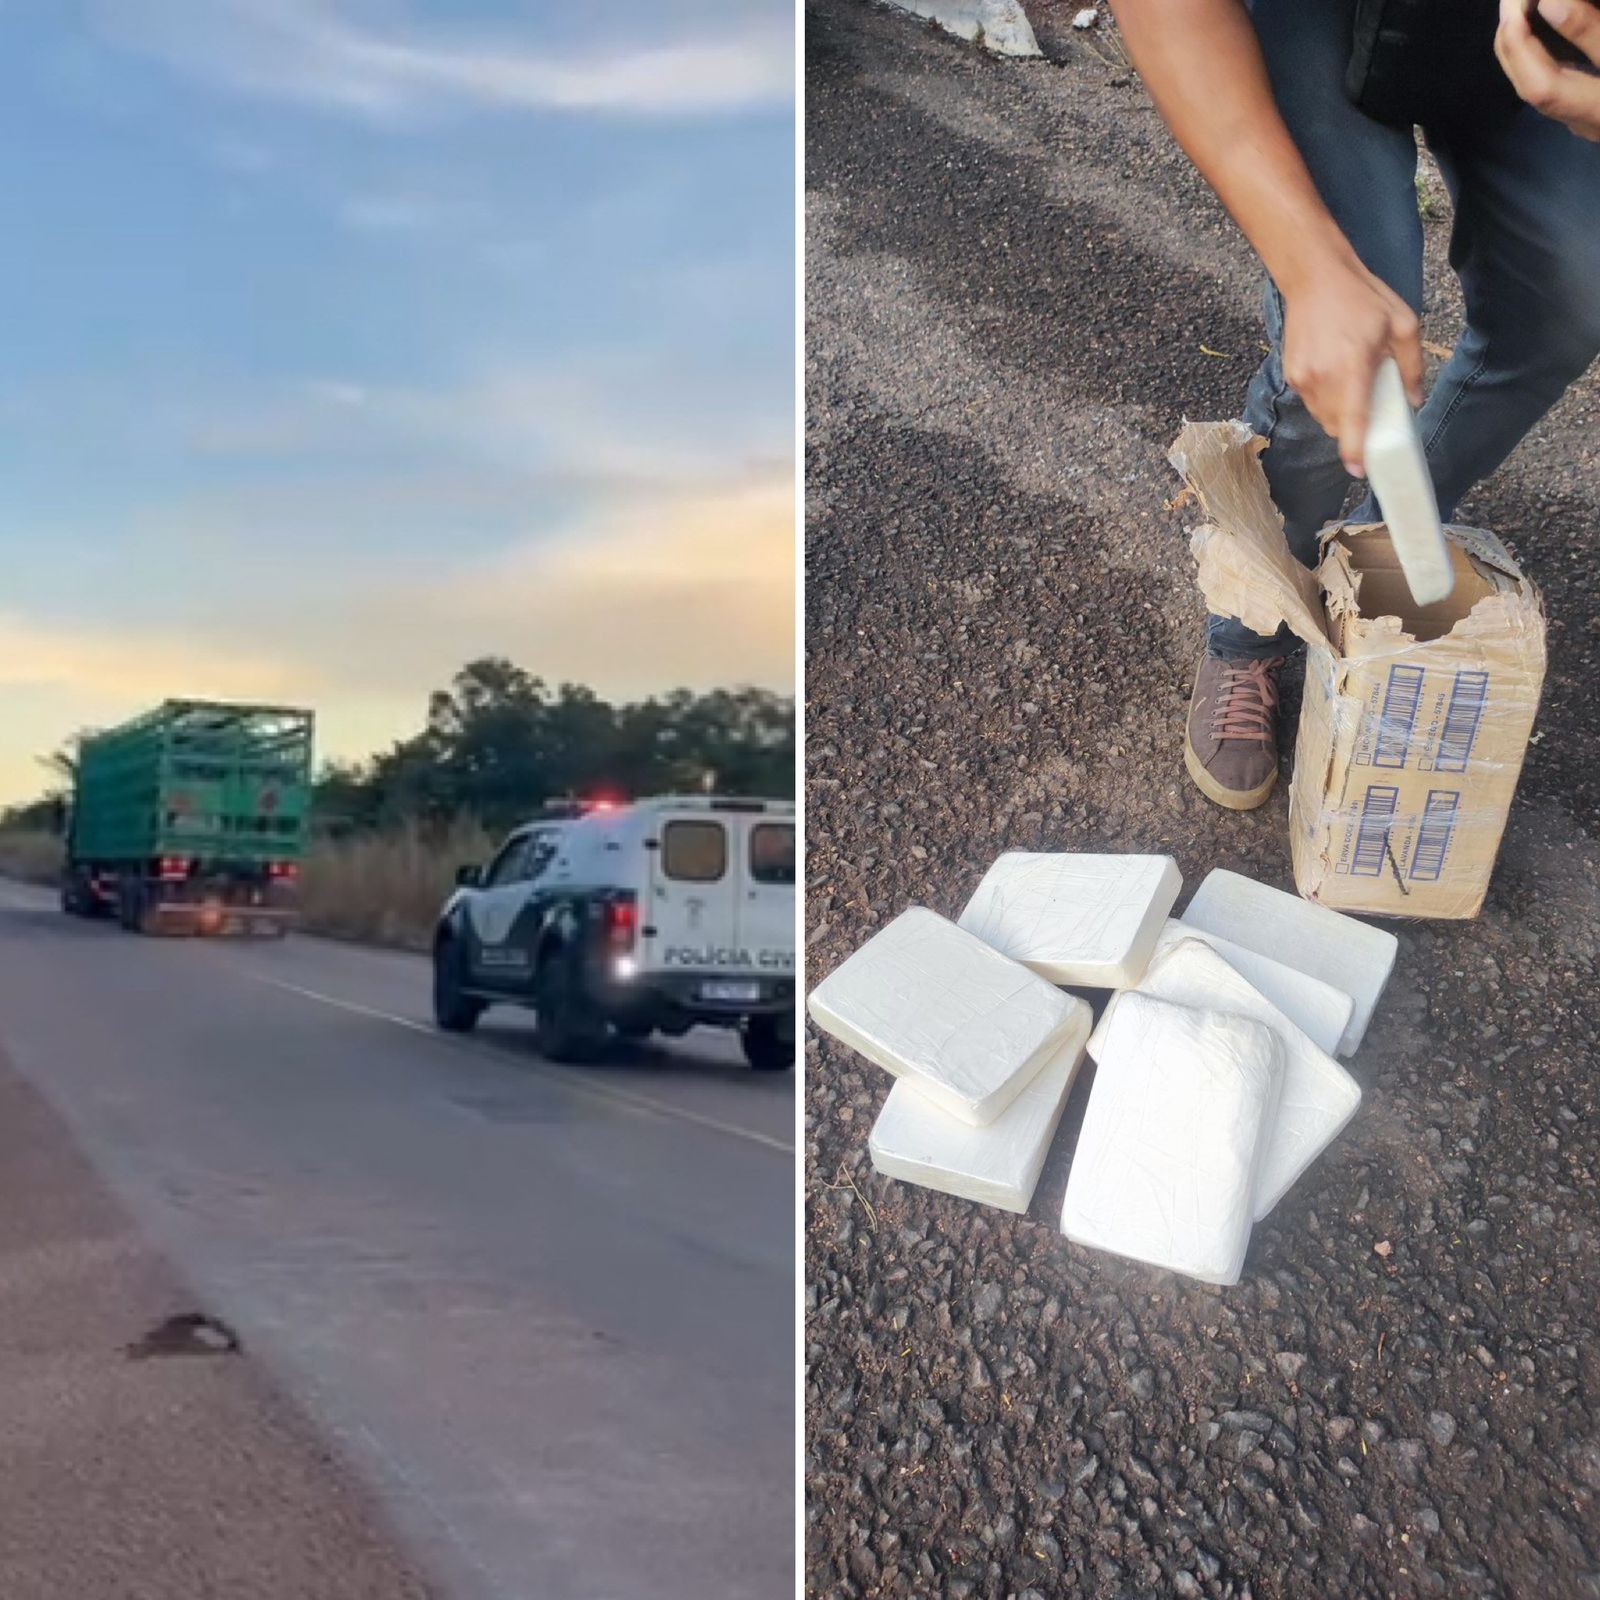 Dois homens são flagrados com 10 kg de pasta base de cocaína escondidos em caminhão com carga de botijões